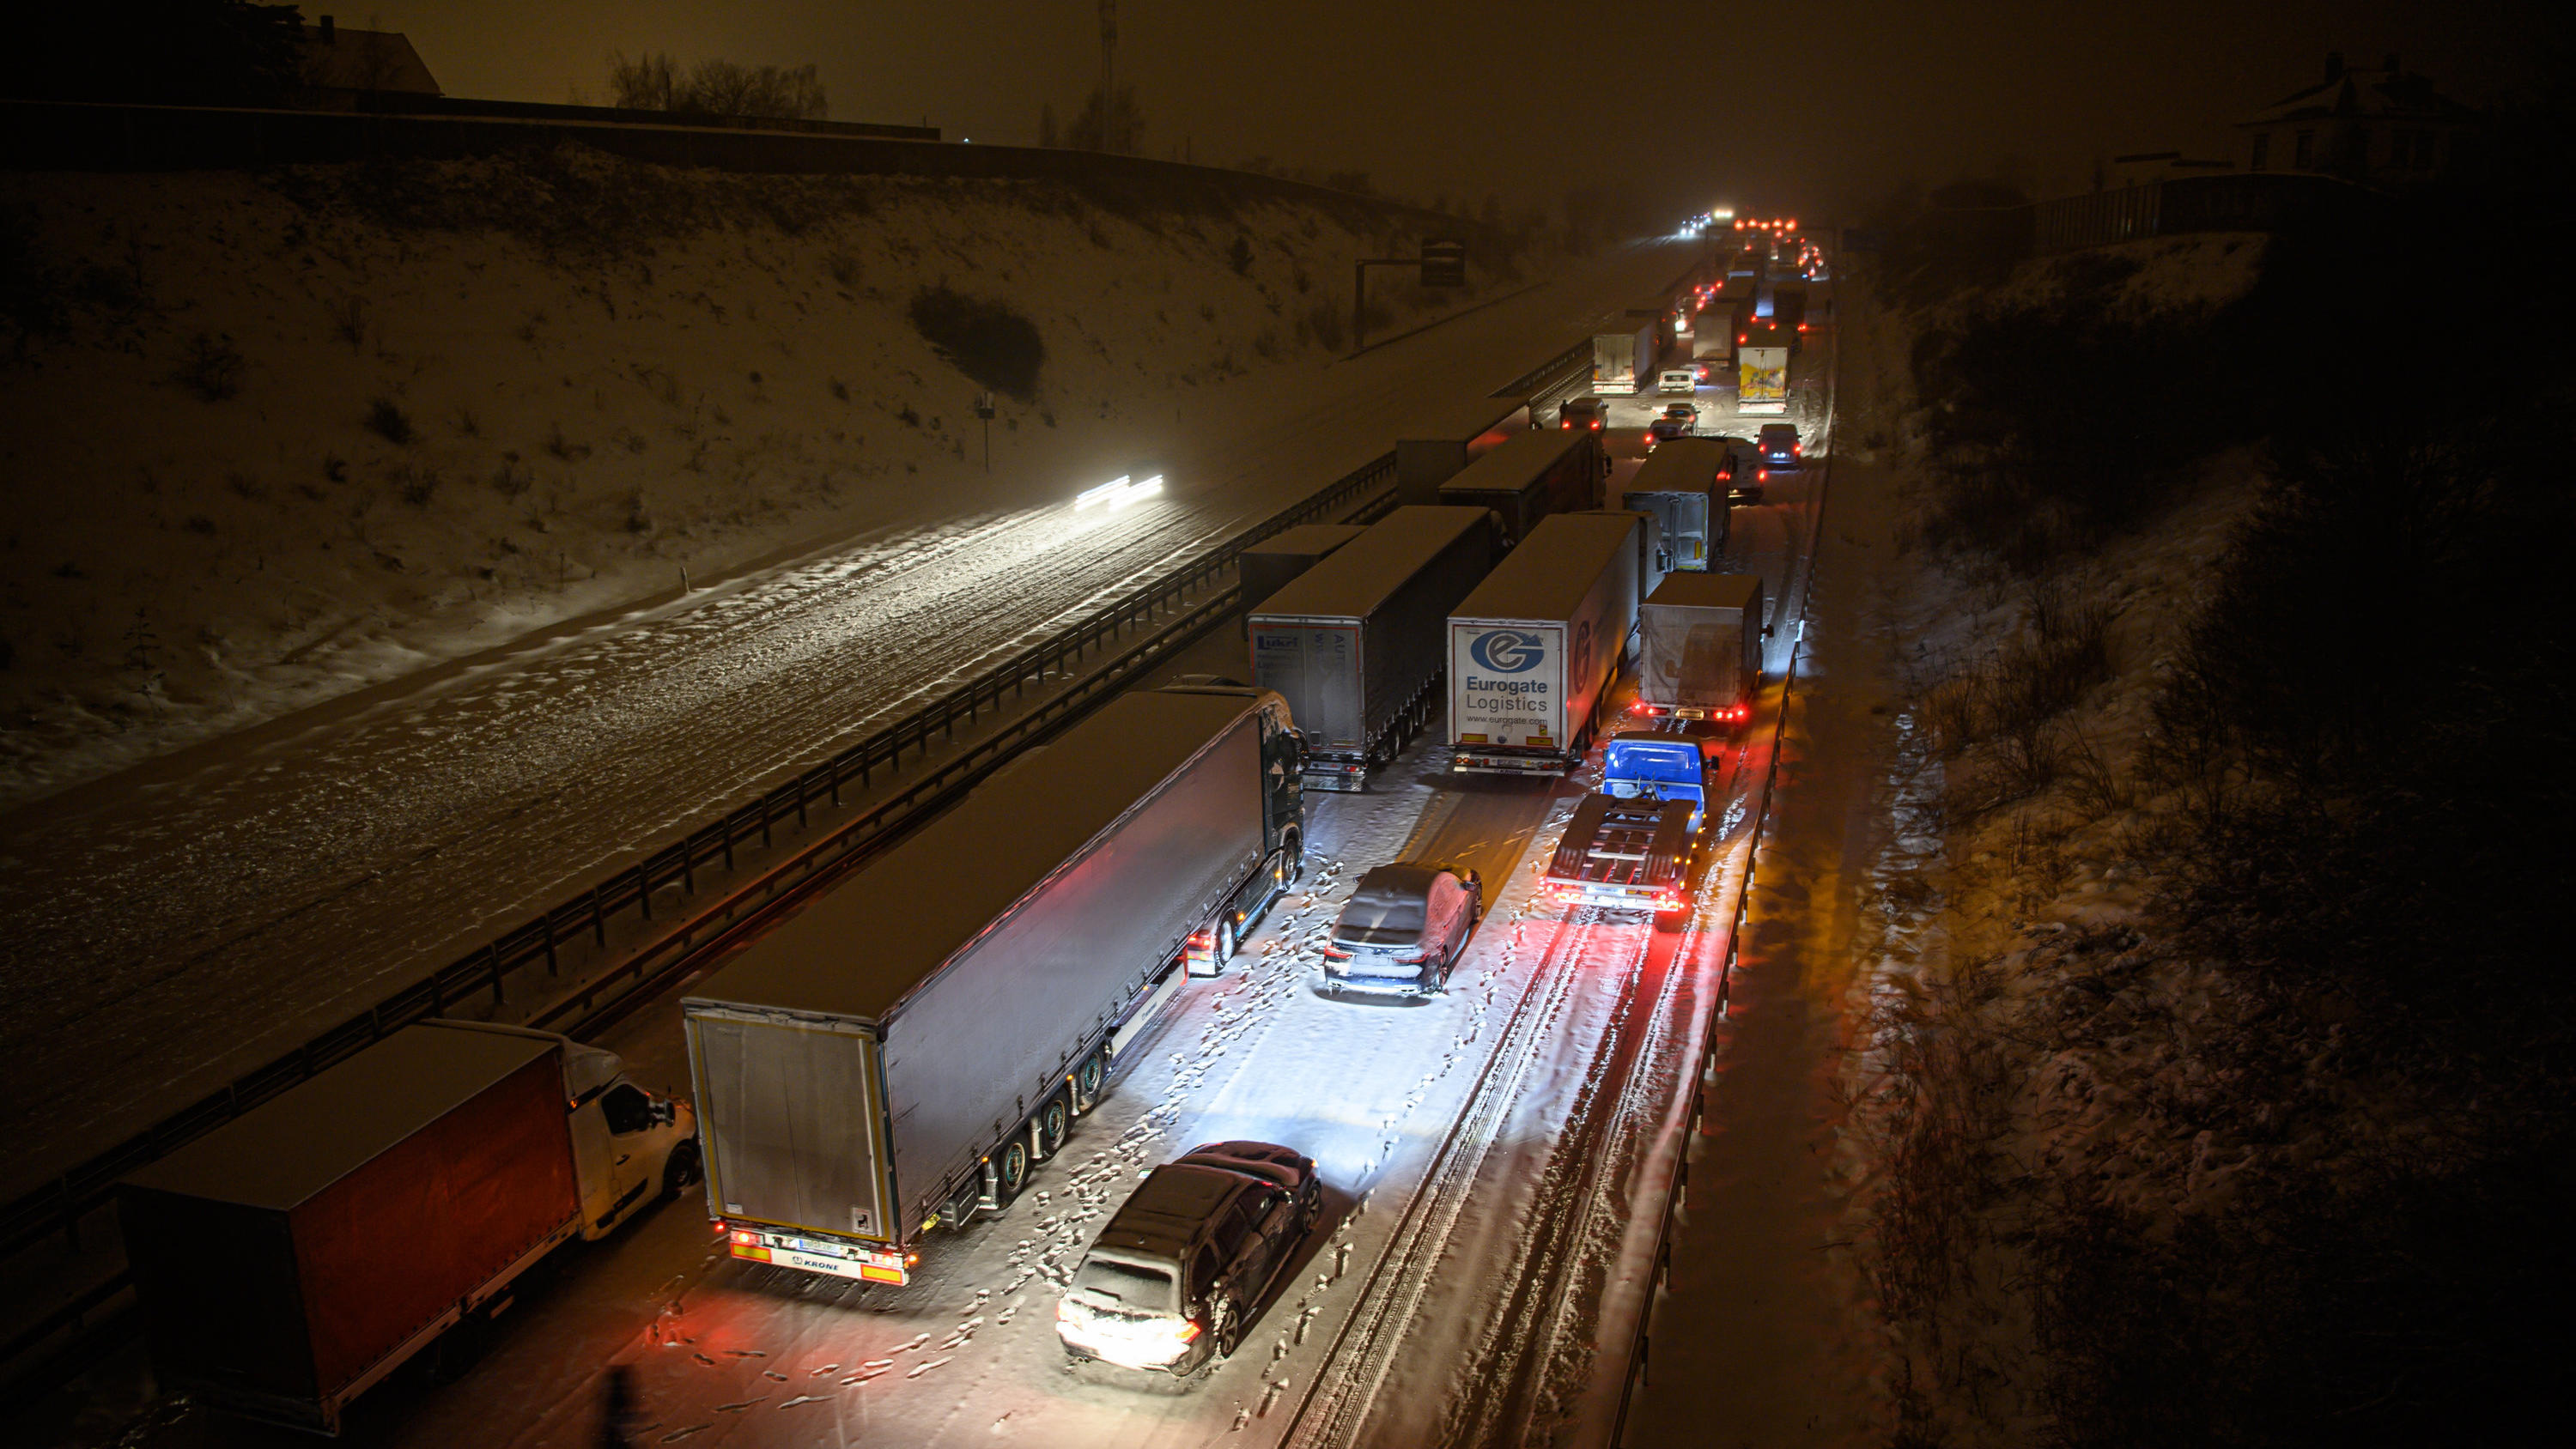 08.02.2021, Sachsen, Dresden: Autos und Lastwagen stehen am frühen Morgen bei Schneefall auf der verschneiten Autobahn 4 bei Dresden im Stau, während ein Mann neben seinem Auto steht. Foto: Robert Michael/dpa-Zentralbild/dpa +++ dpa-Bildfunk +++